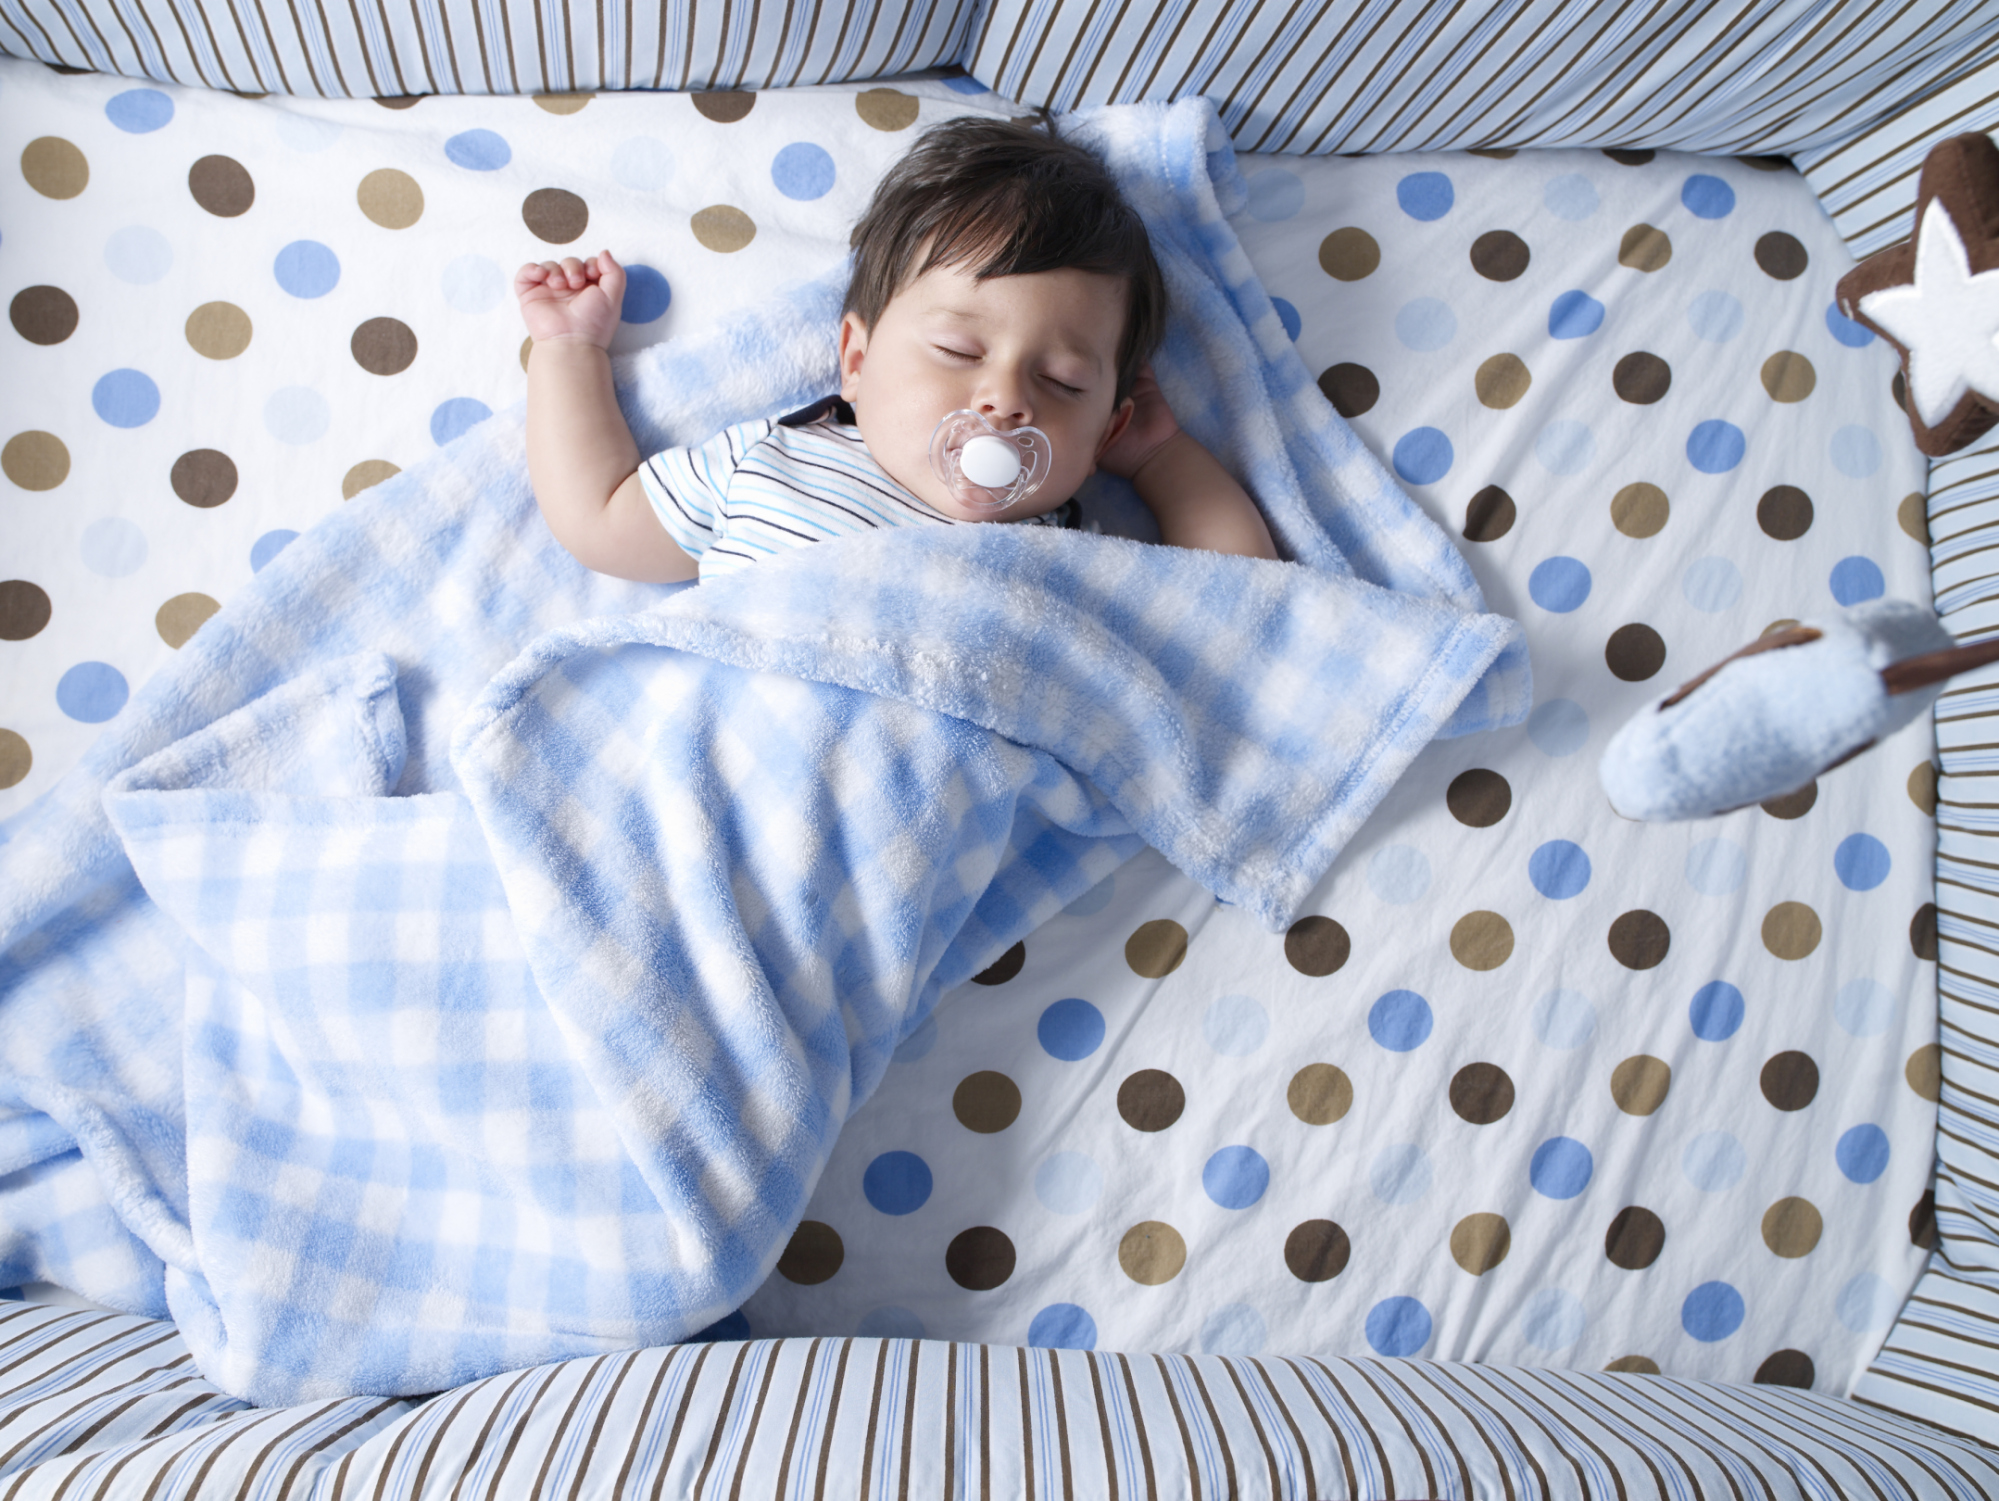 Нарушение сна у новорожденного